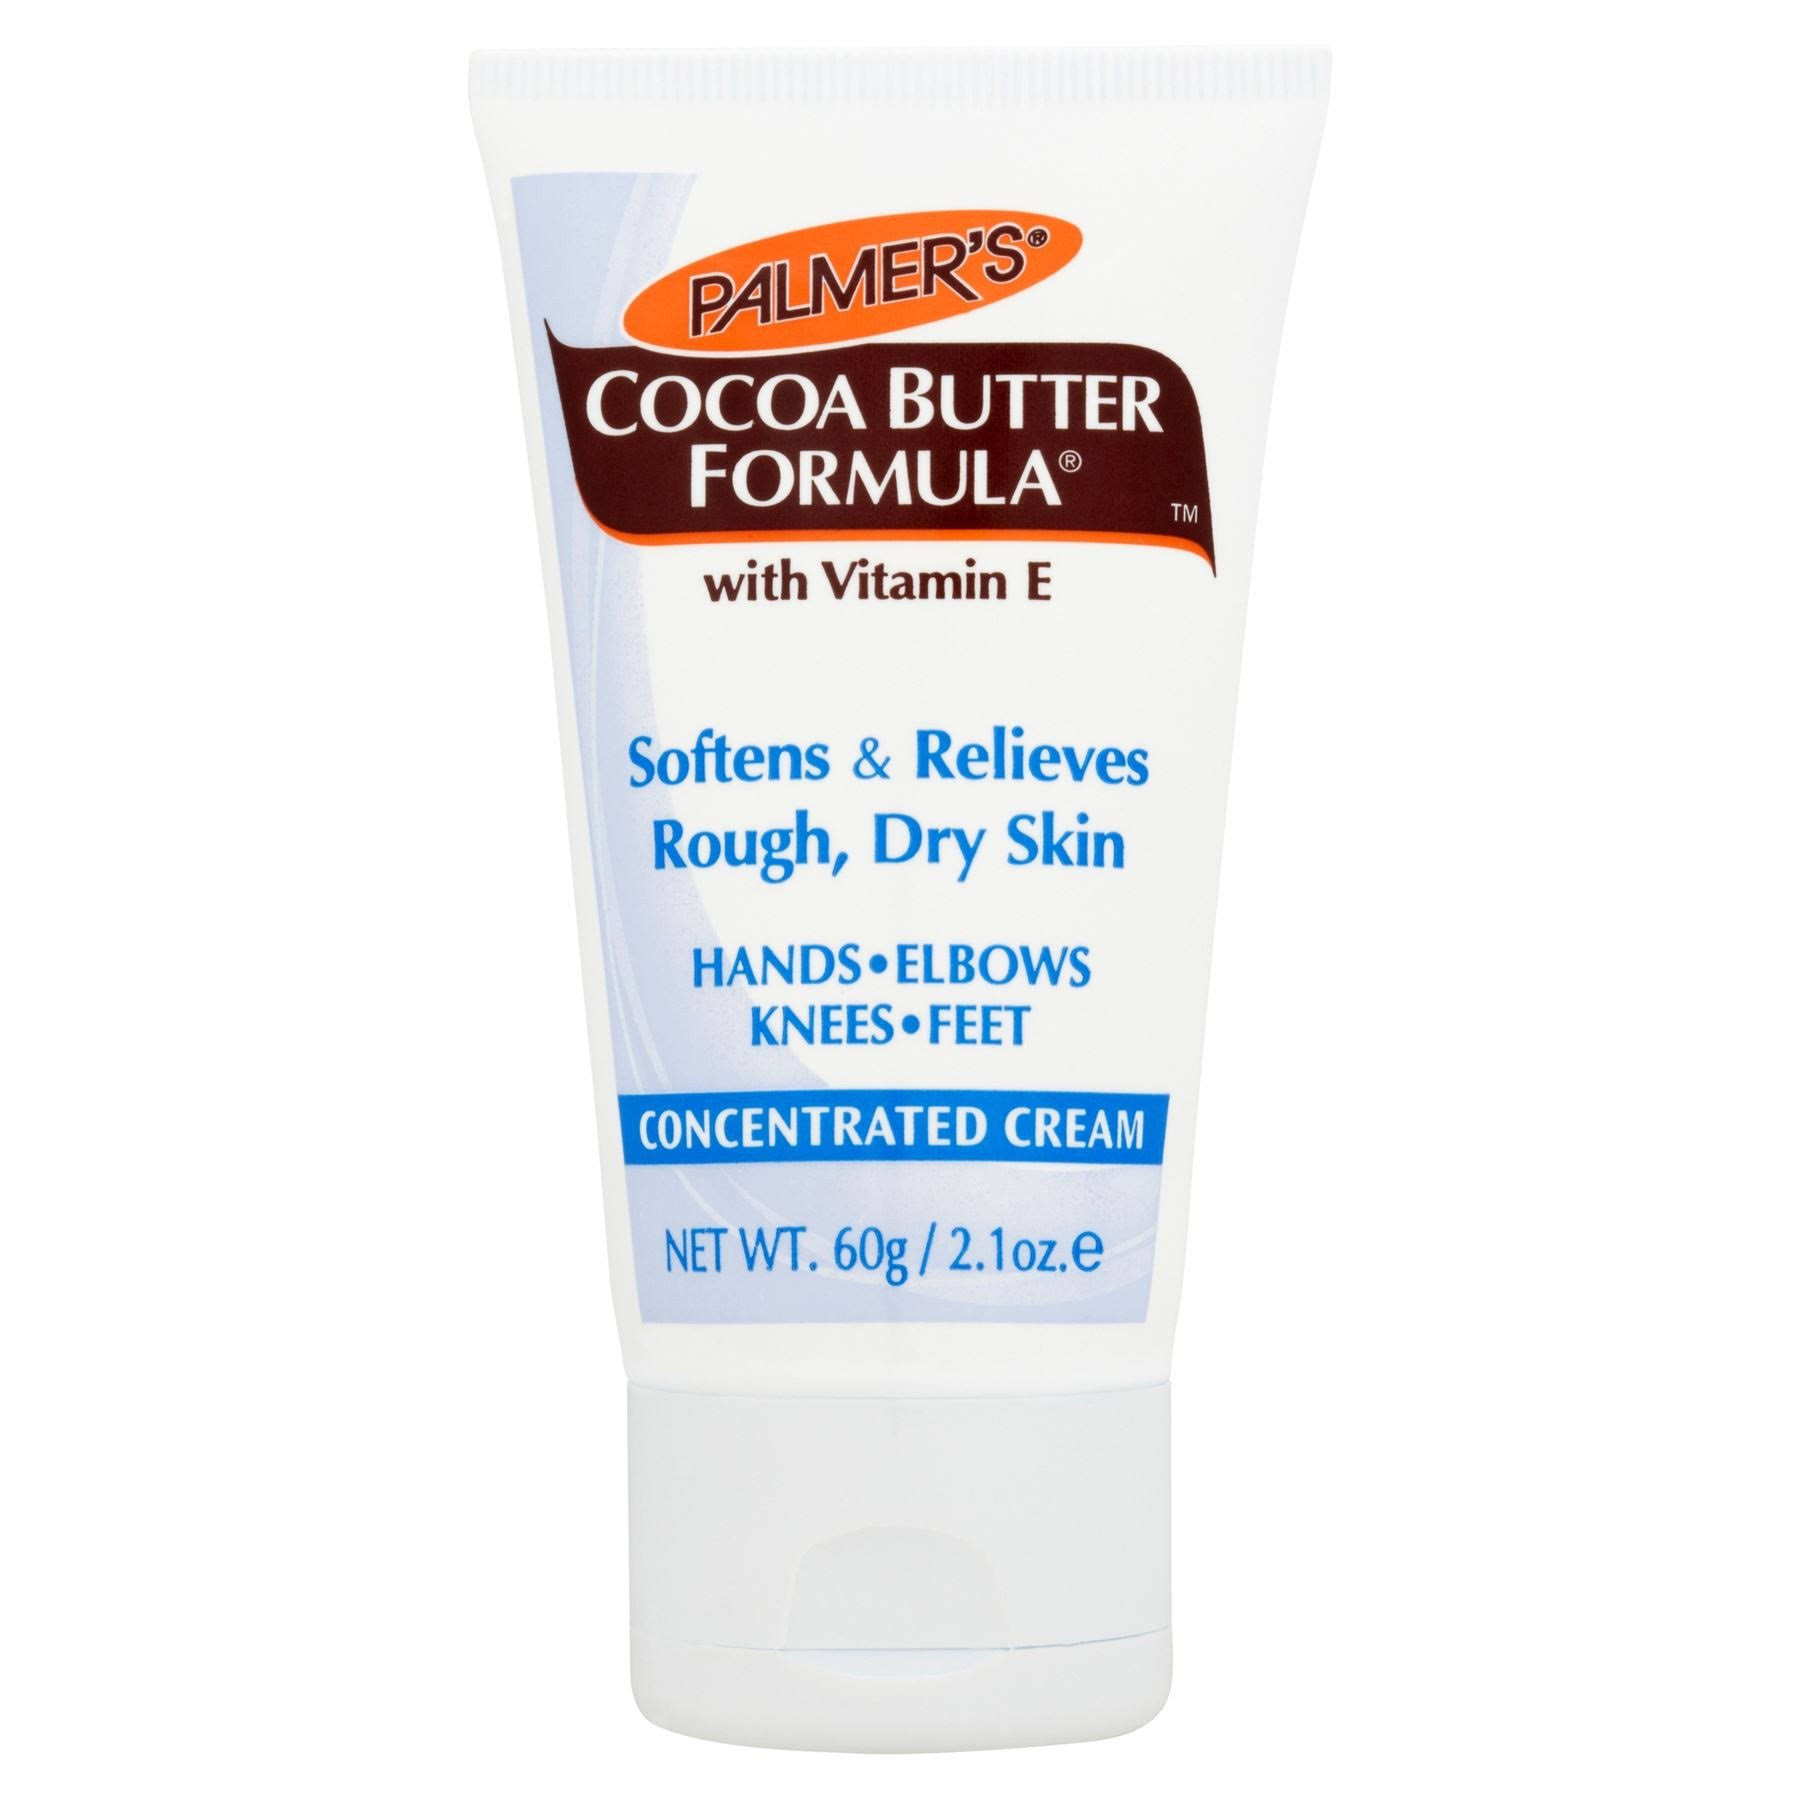 Palmers Cocoa Butter Formula Concentrated Cream - with Vitamin E, 21oz